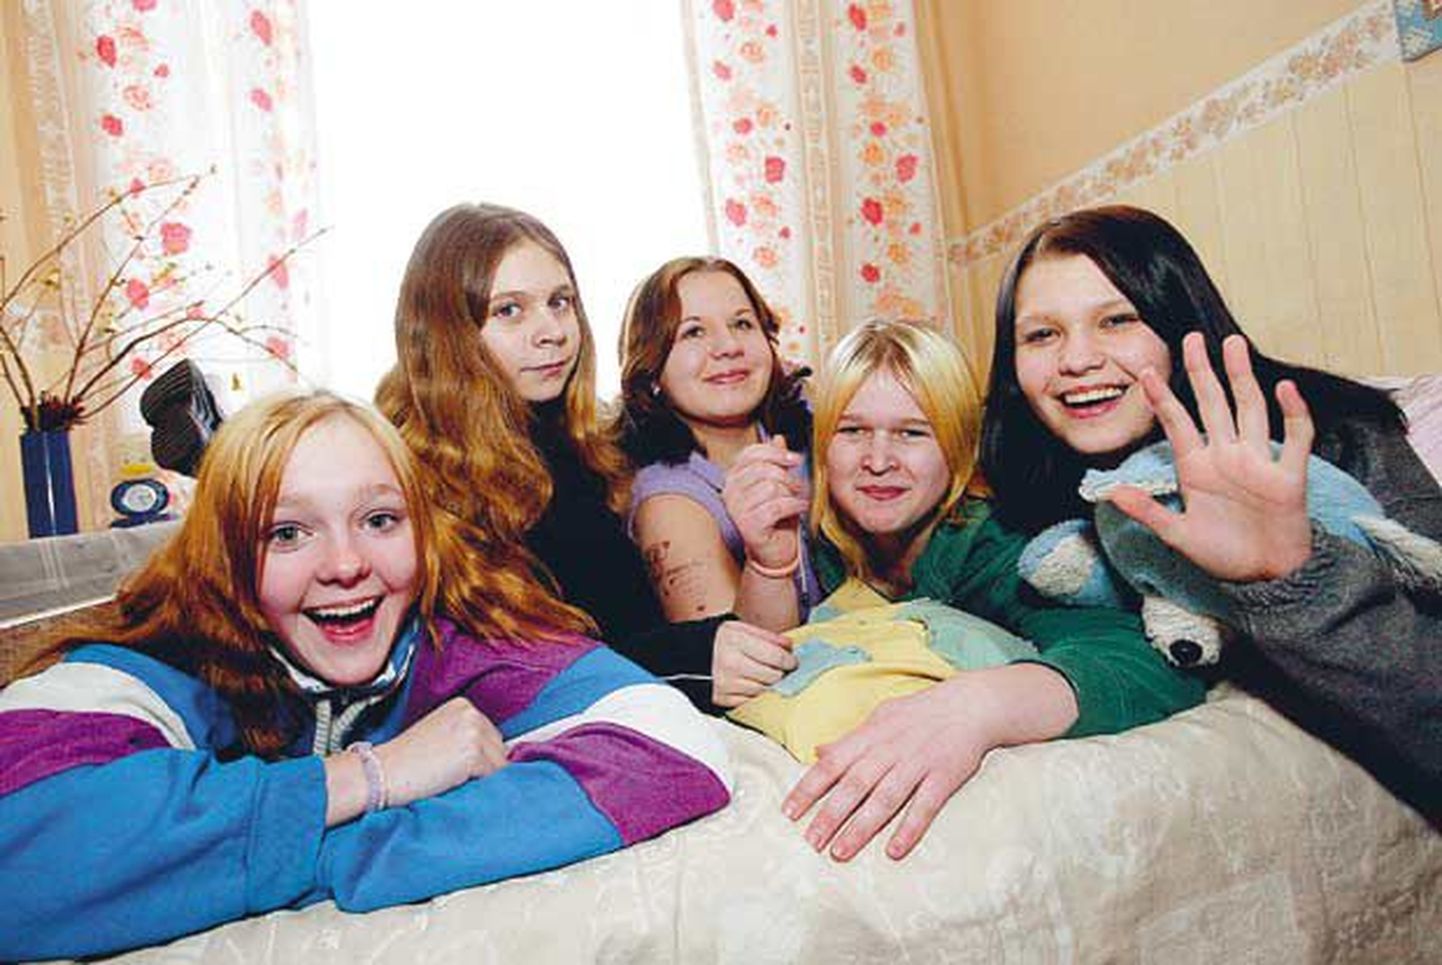 Kaagvere erikooli tüdrukud (vasakult) Liisi Kongi, Jelena Artamonova, Janne Luhaorg, Reelika Kaldma ja Olesja Neurashkova unistavad, et tugiisikud aitavad neil koolist lahkumise järel elu õigesse rööpasse seada